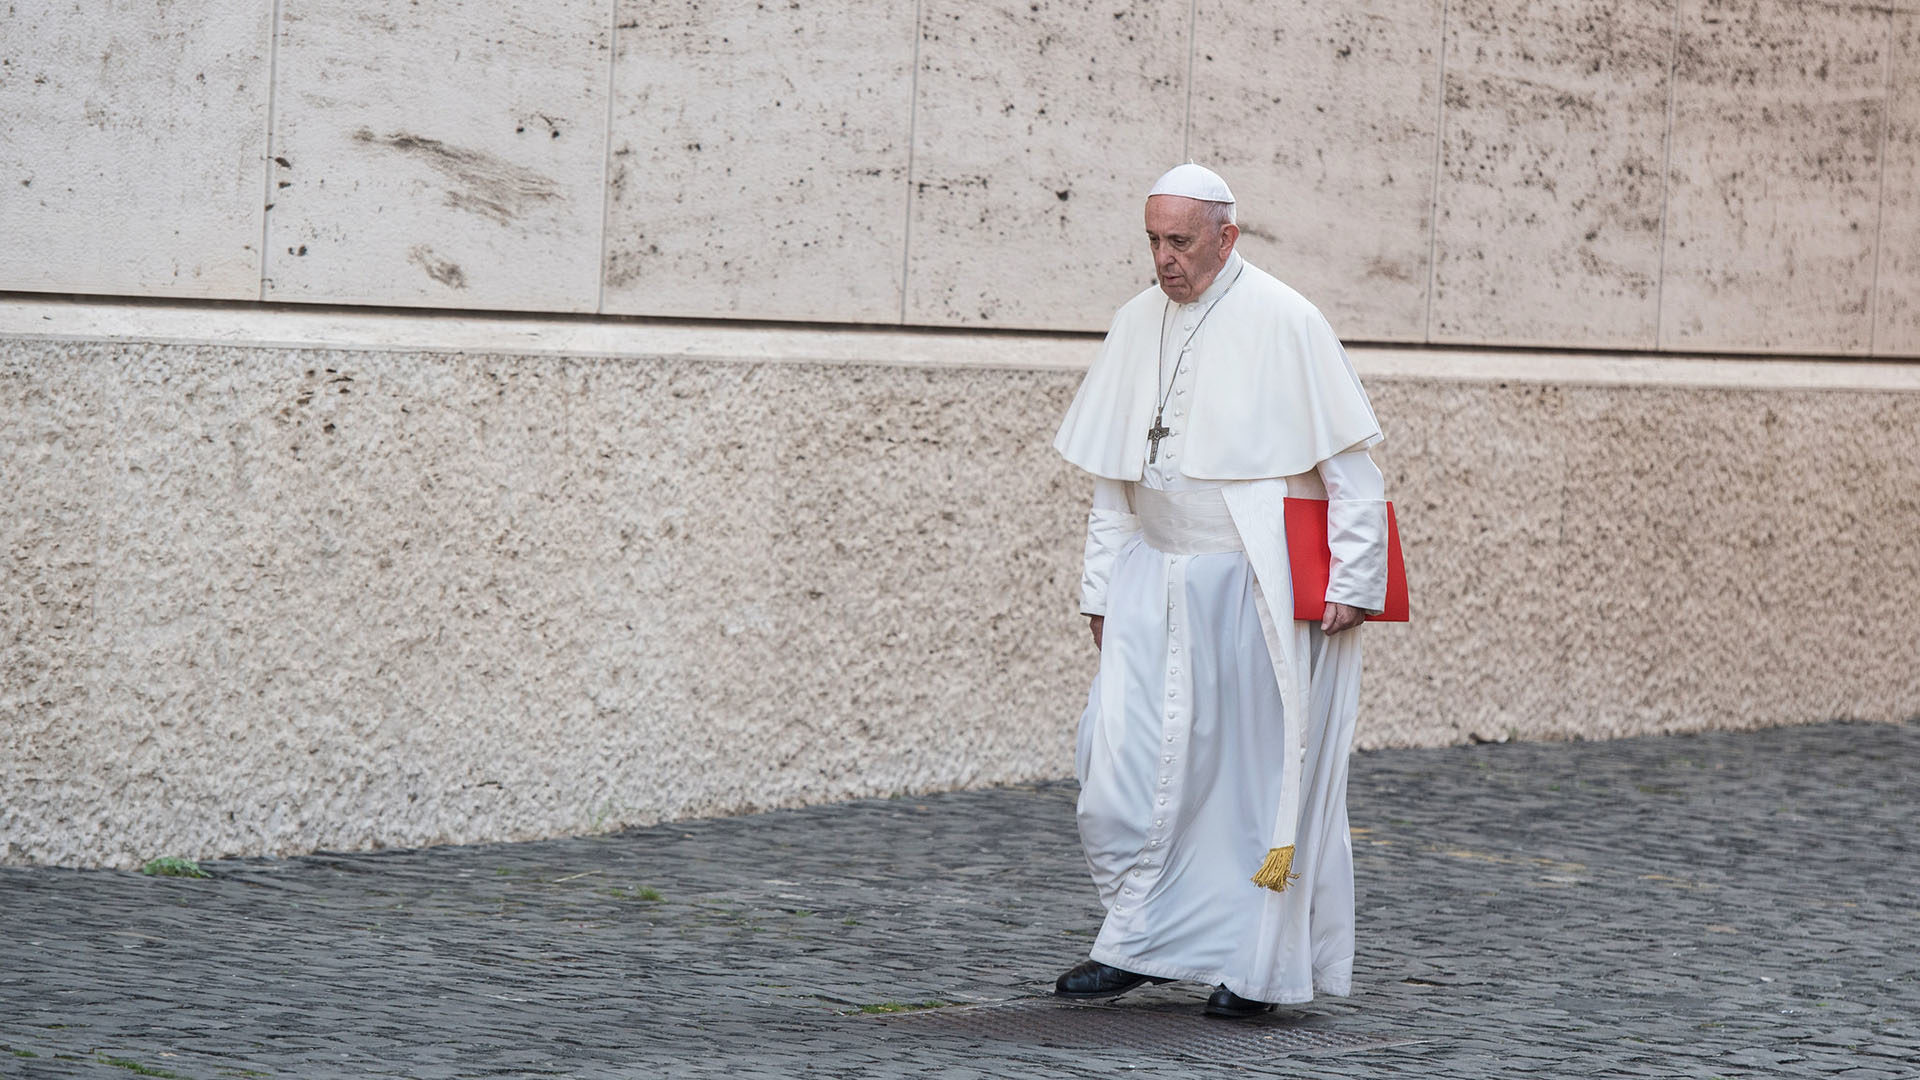 Le pape François souffre d'un genou qui le gêne  pour marcher  | © Flickr/Mazur/CC BY-NC-SA 2.0